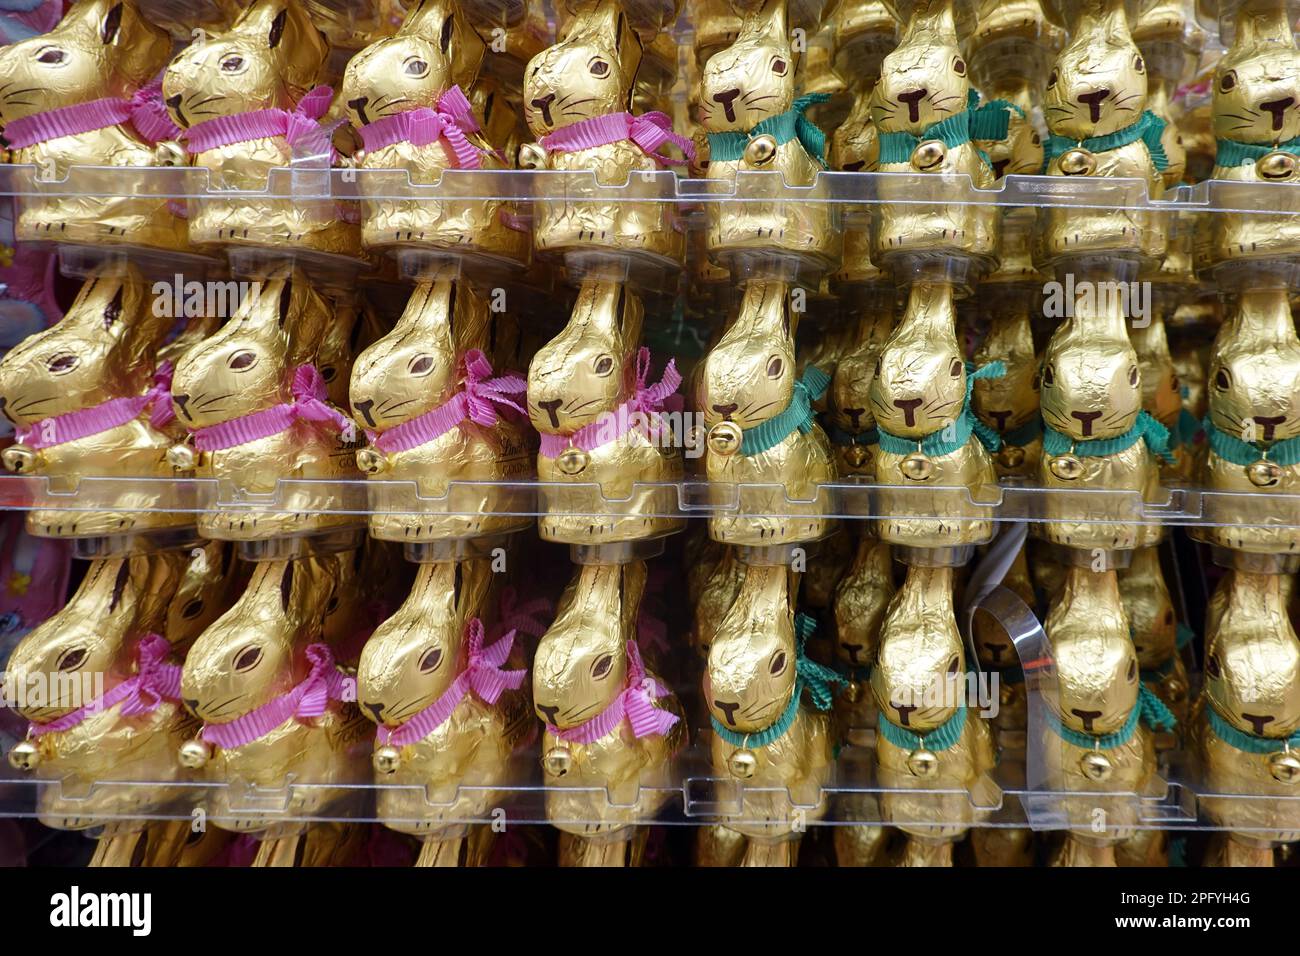 Schokoladenosterhasen der Firma Lindt & Sprüngli Stehen aufgereiht in einem Lebensmittelgeschäft Foto de stock